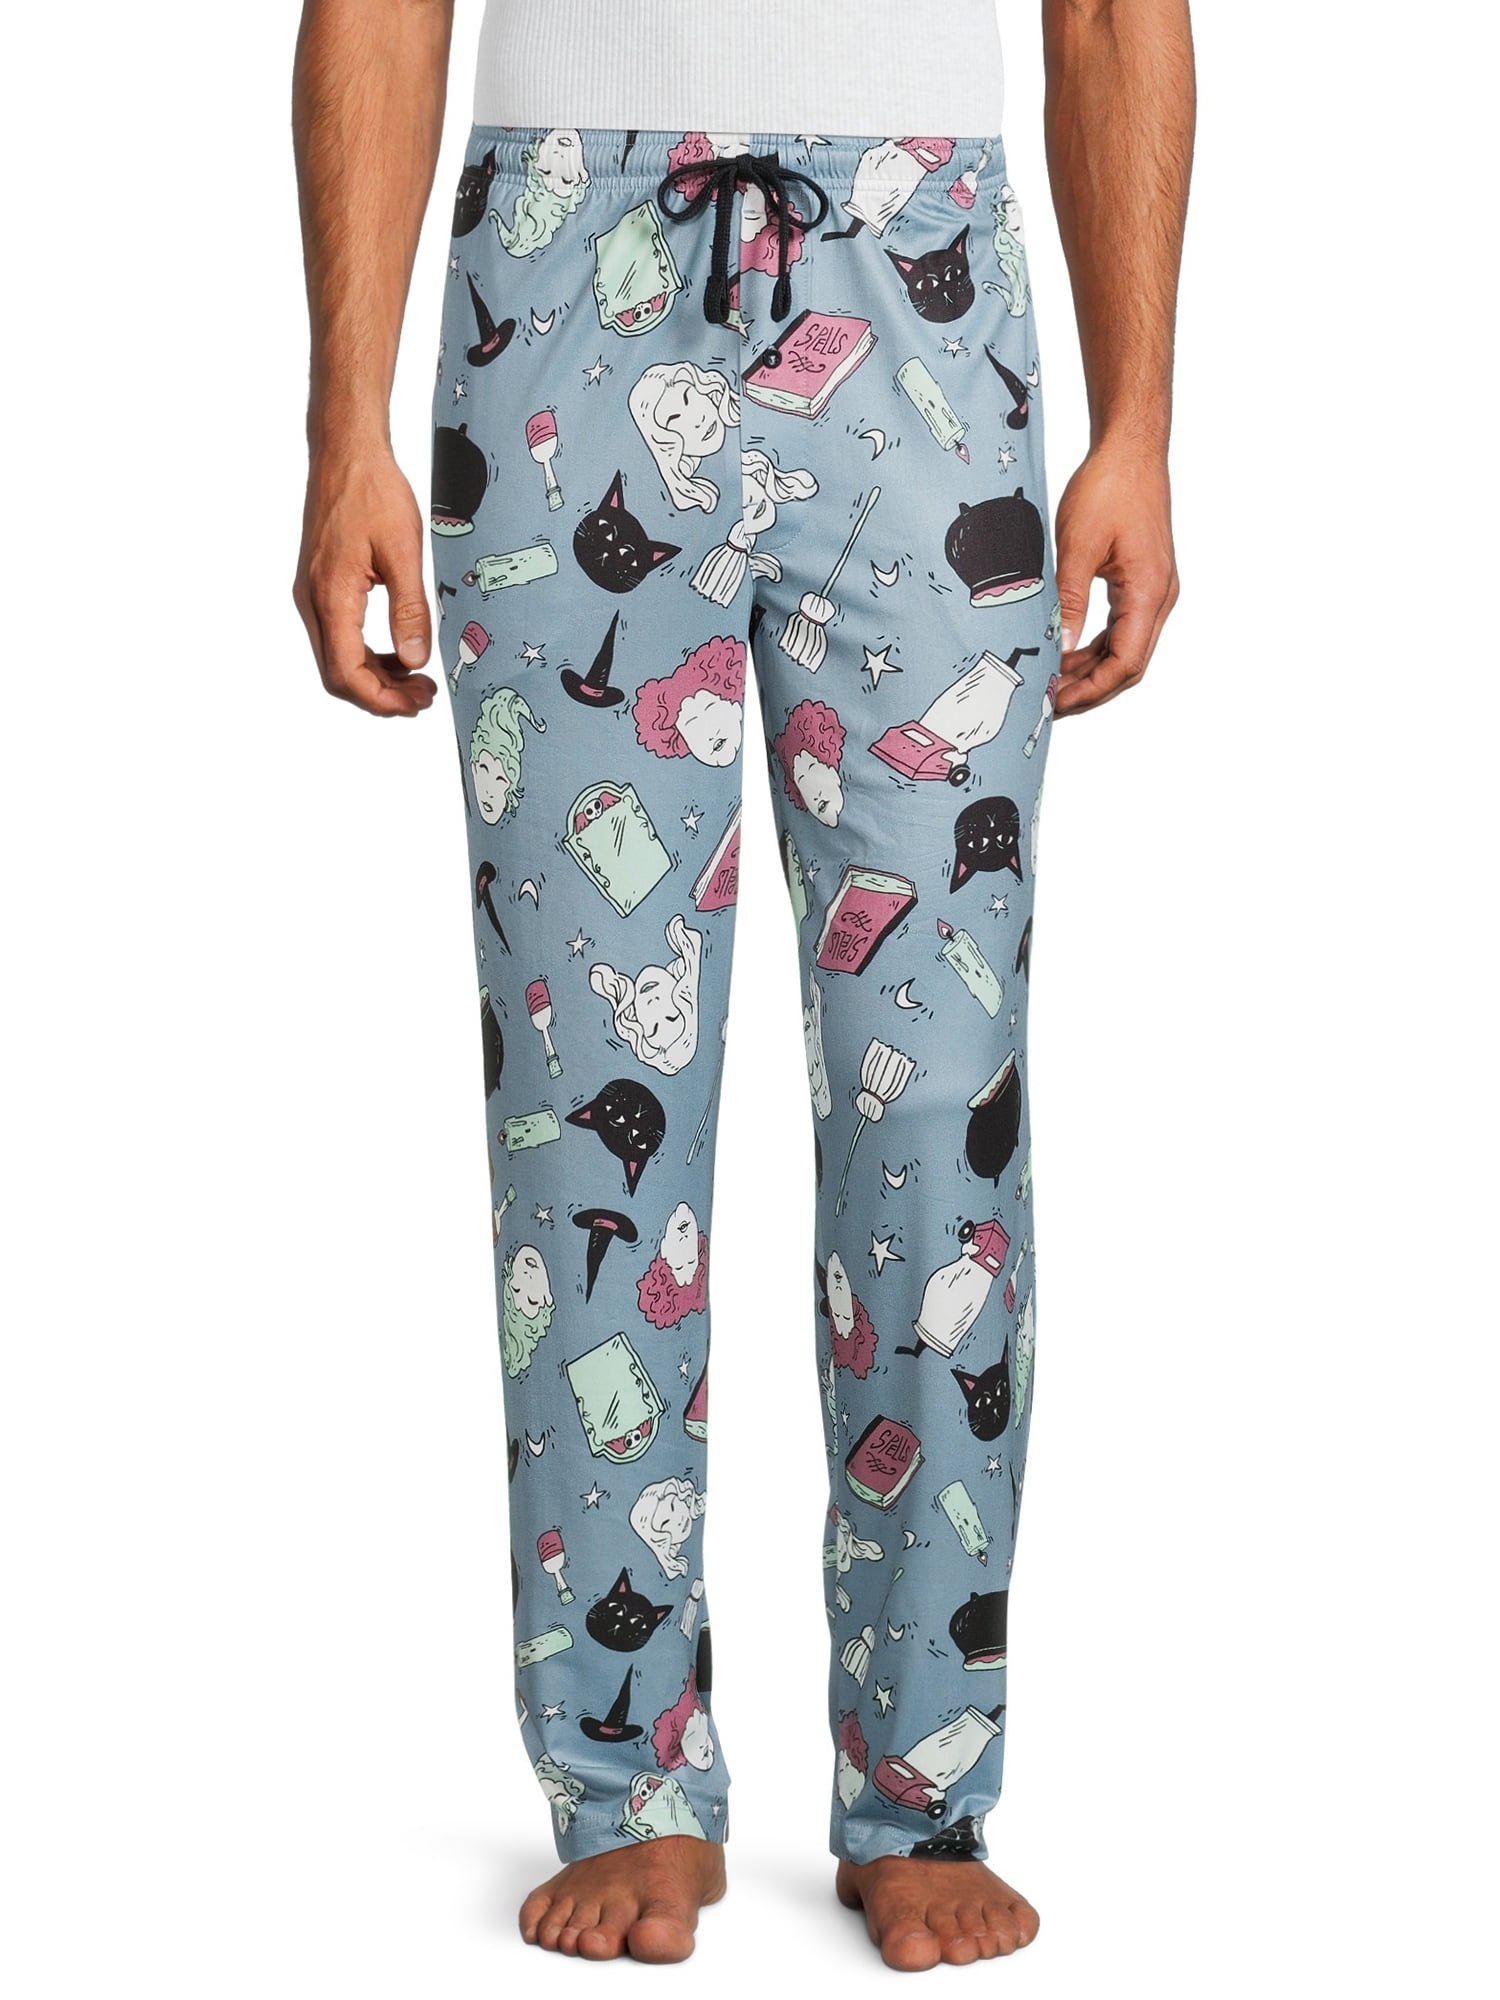 Mens Cargo Bay PJ Set Pyjamas Buttoned Front Lounge Pants Top 